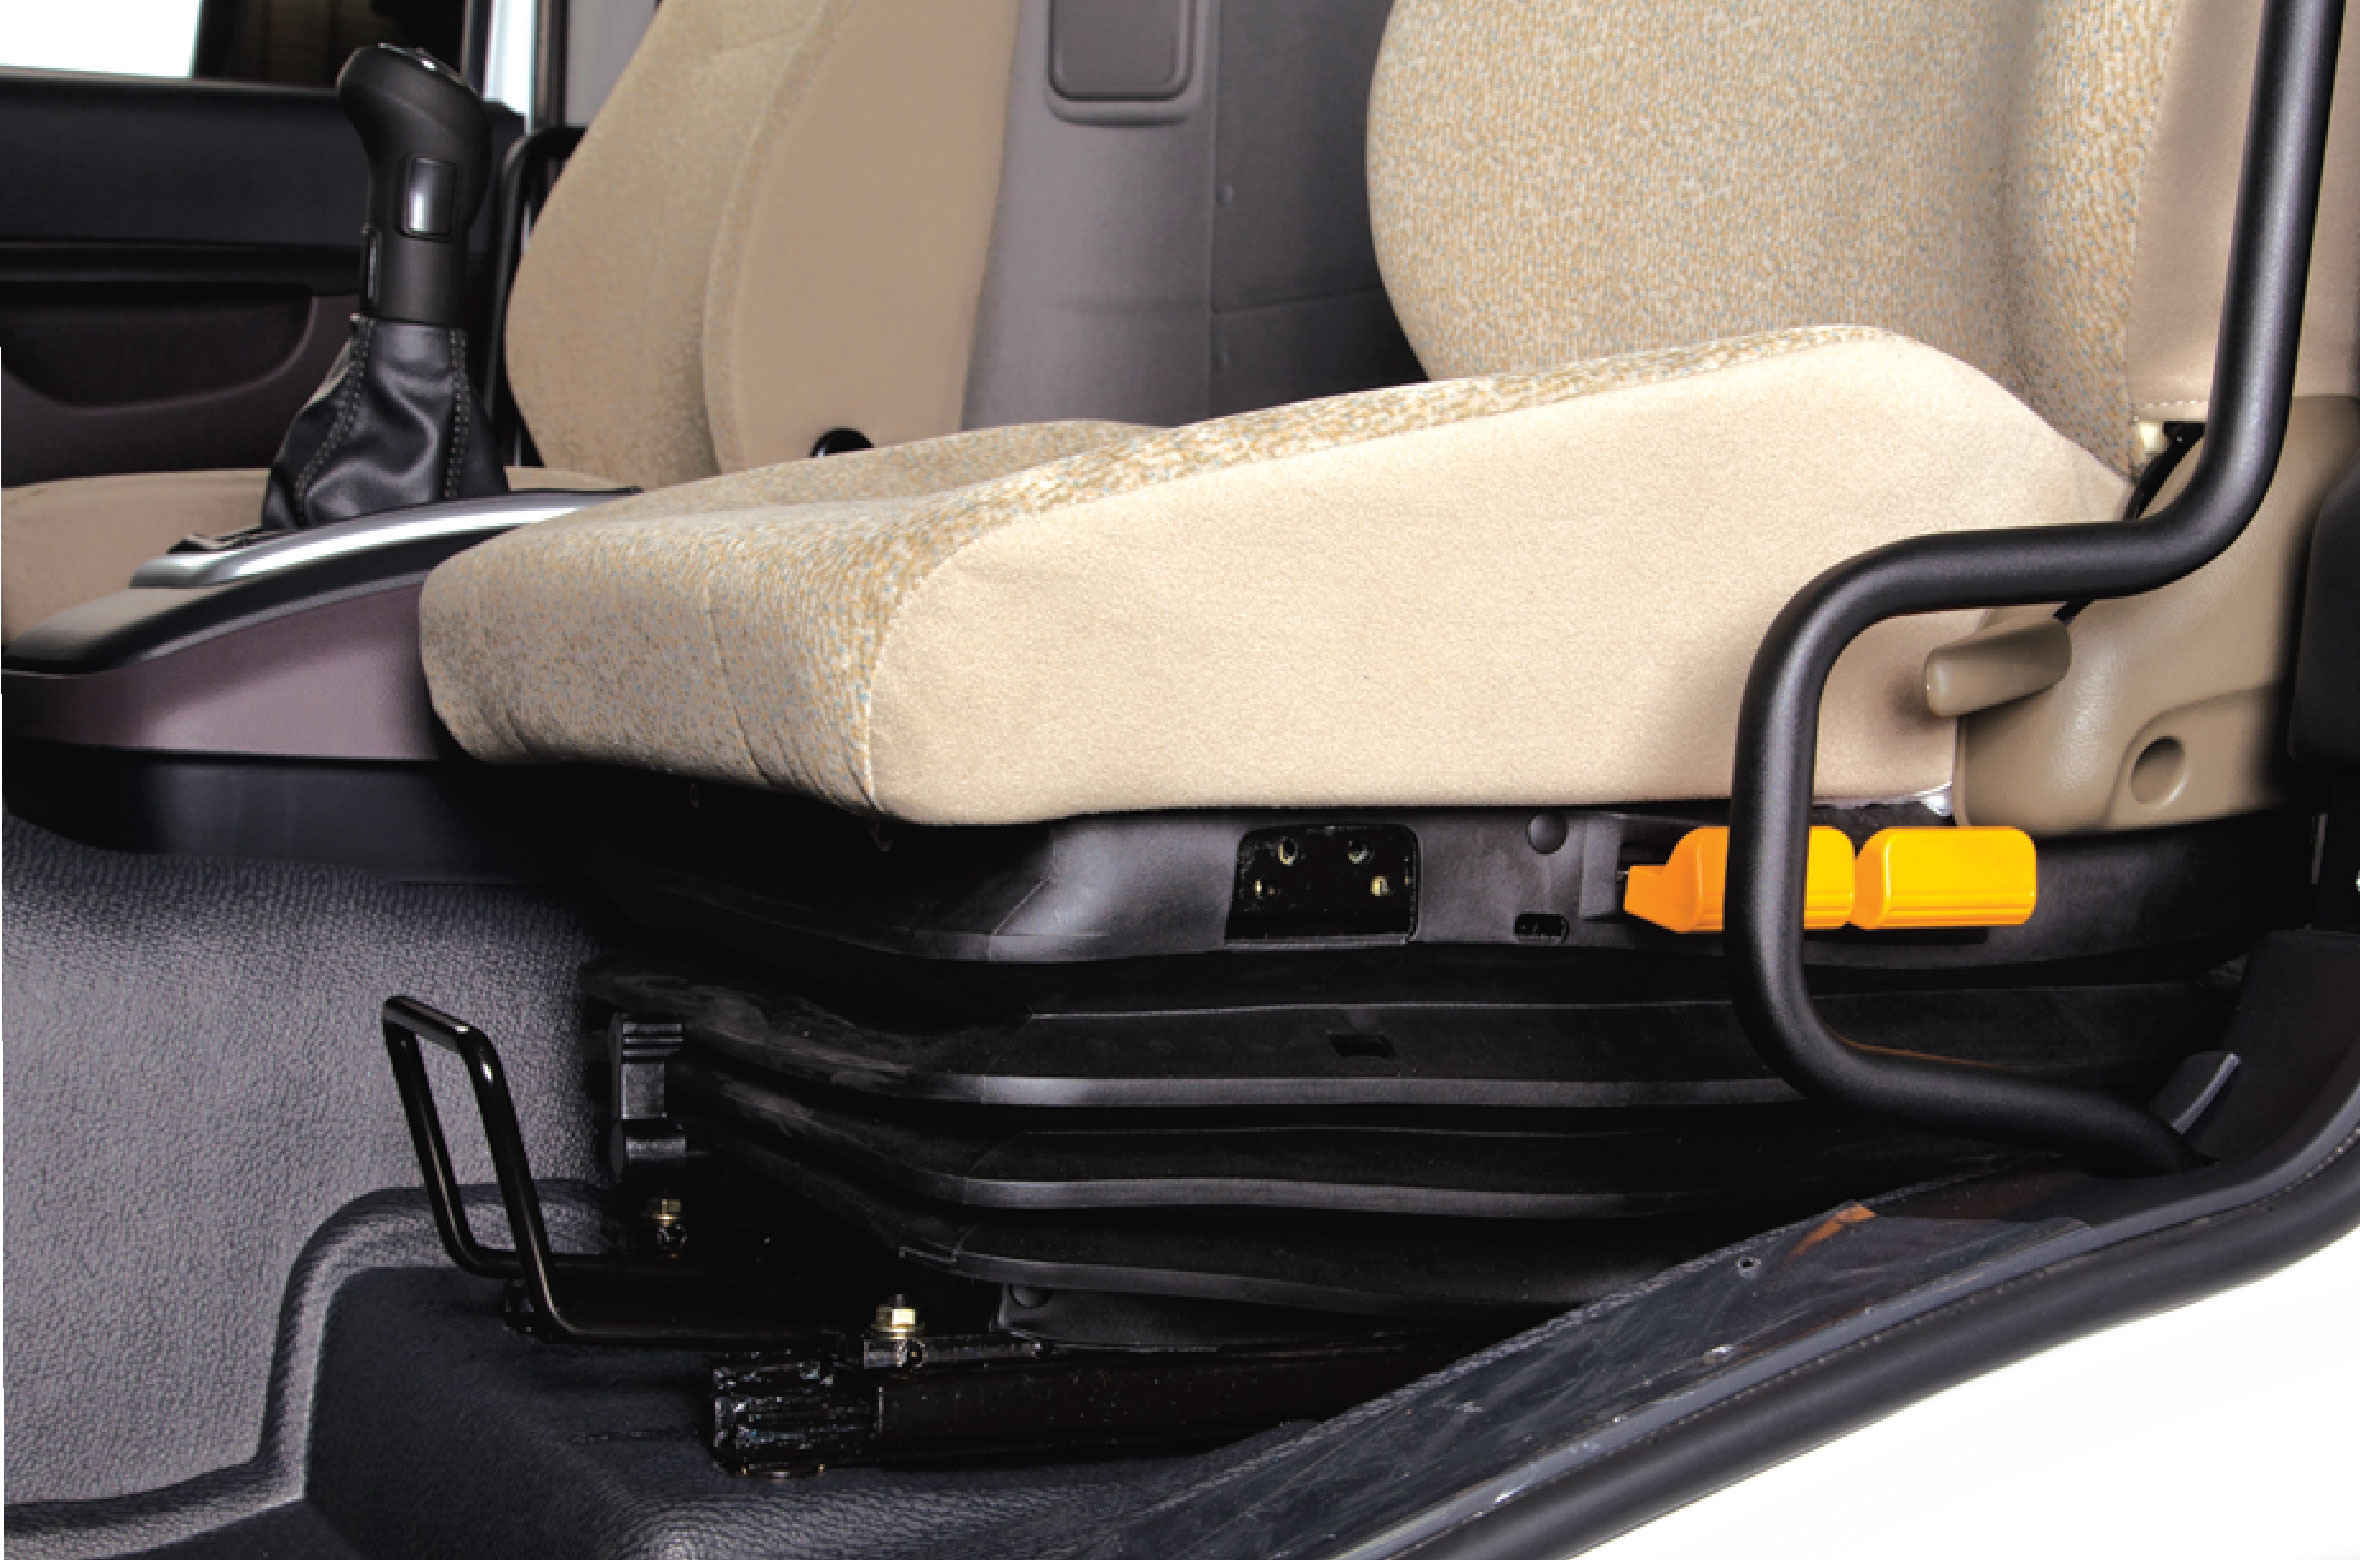 Ghế tài xế được trang bị đệm khí nén ( tuỳ chọn ) giúp giảm chấn, đem lại cảm giác thoải mái khi ngồi